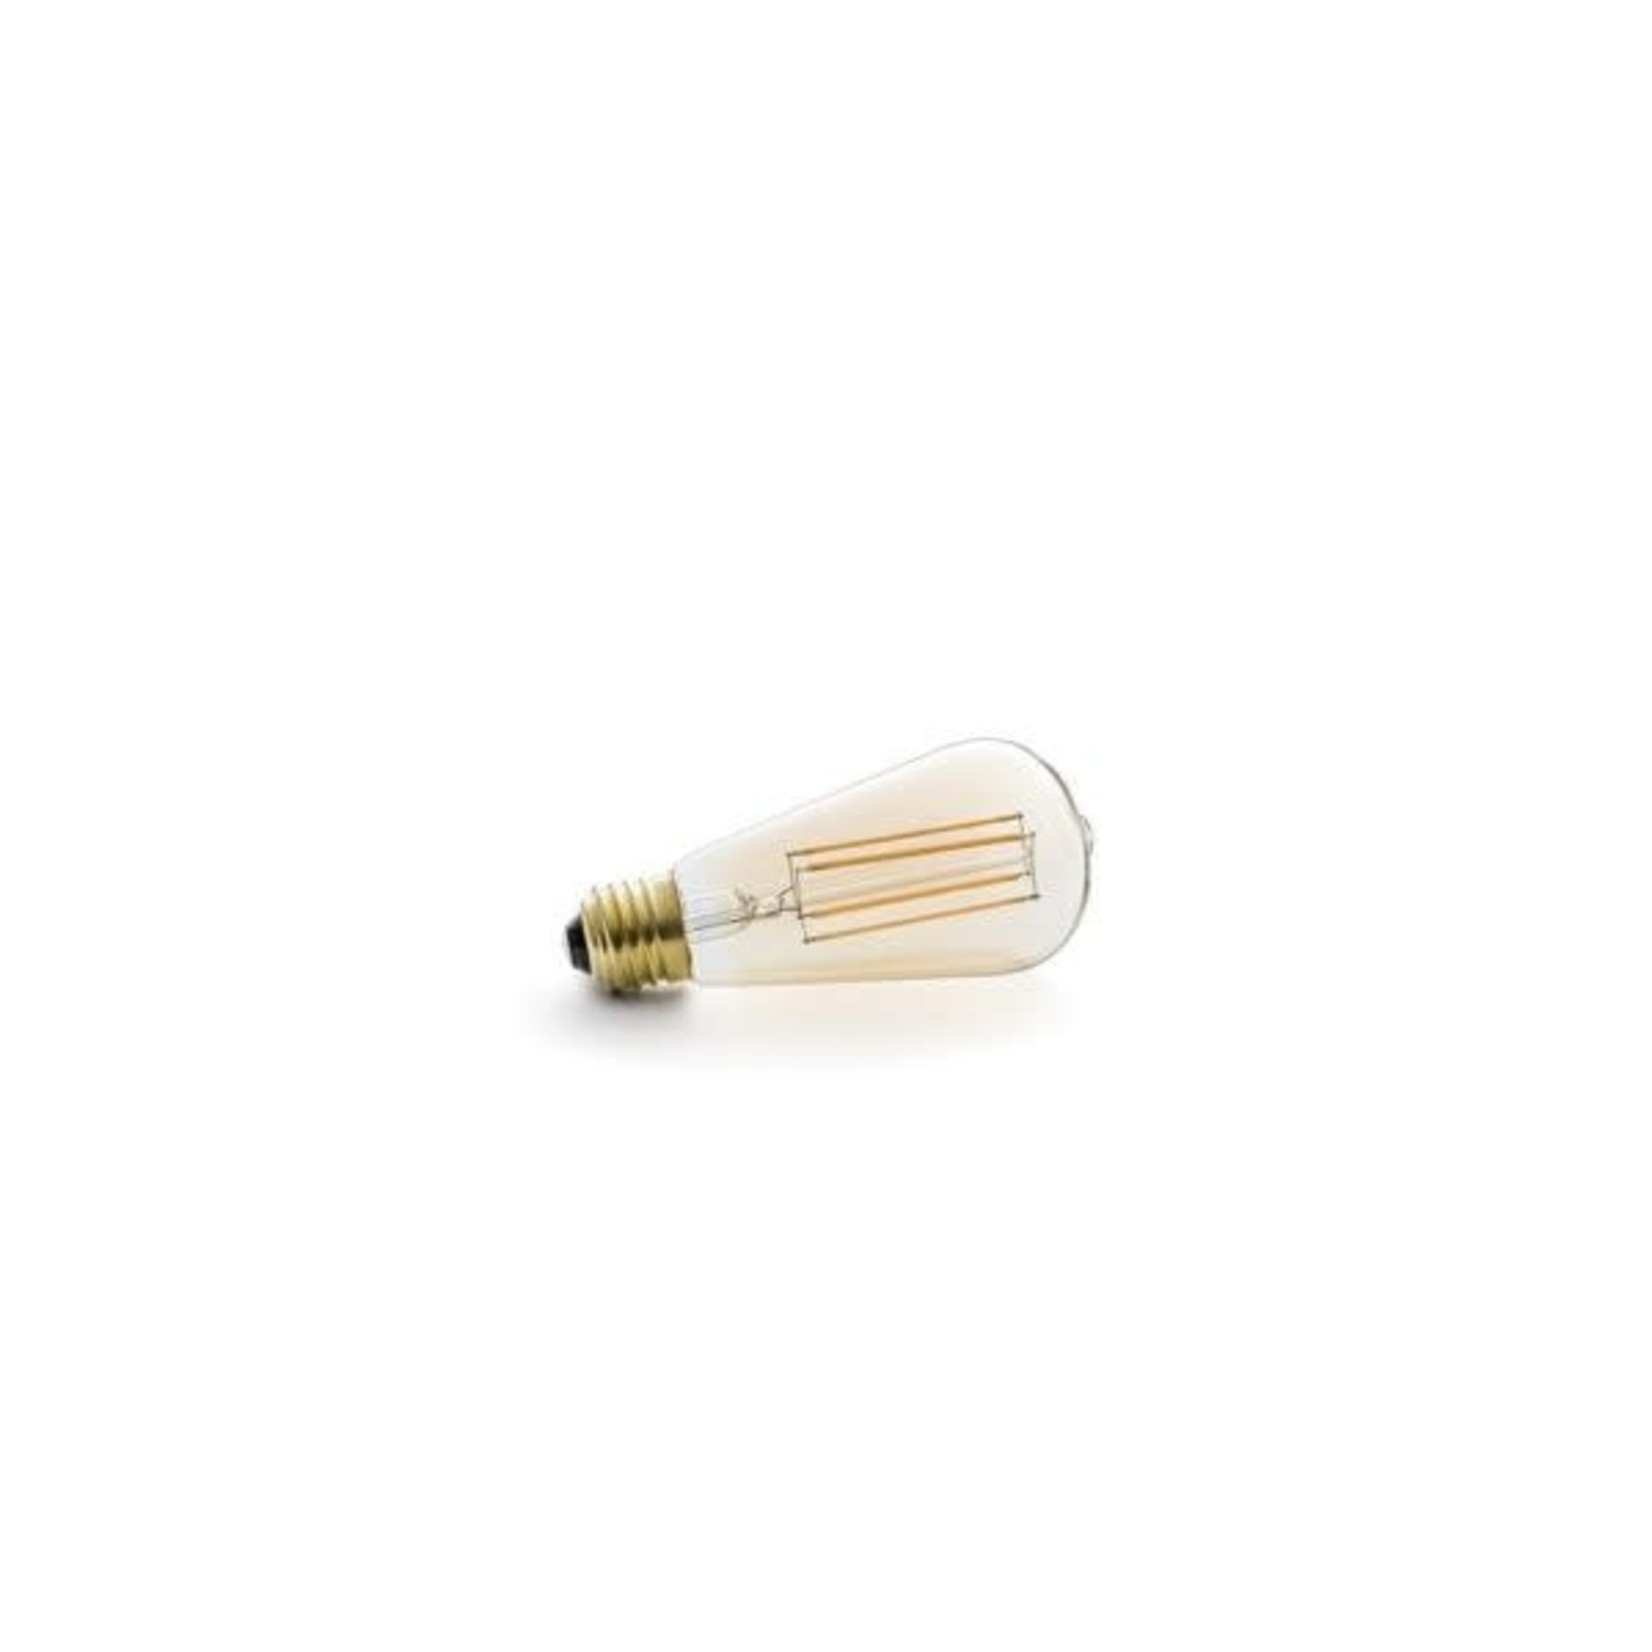 Ampoule angulaire Light ambre 7x14 cm